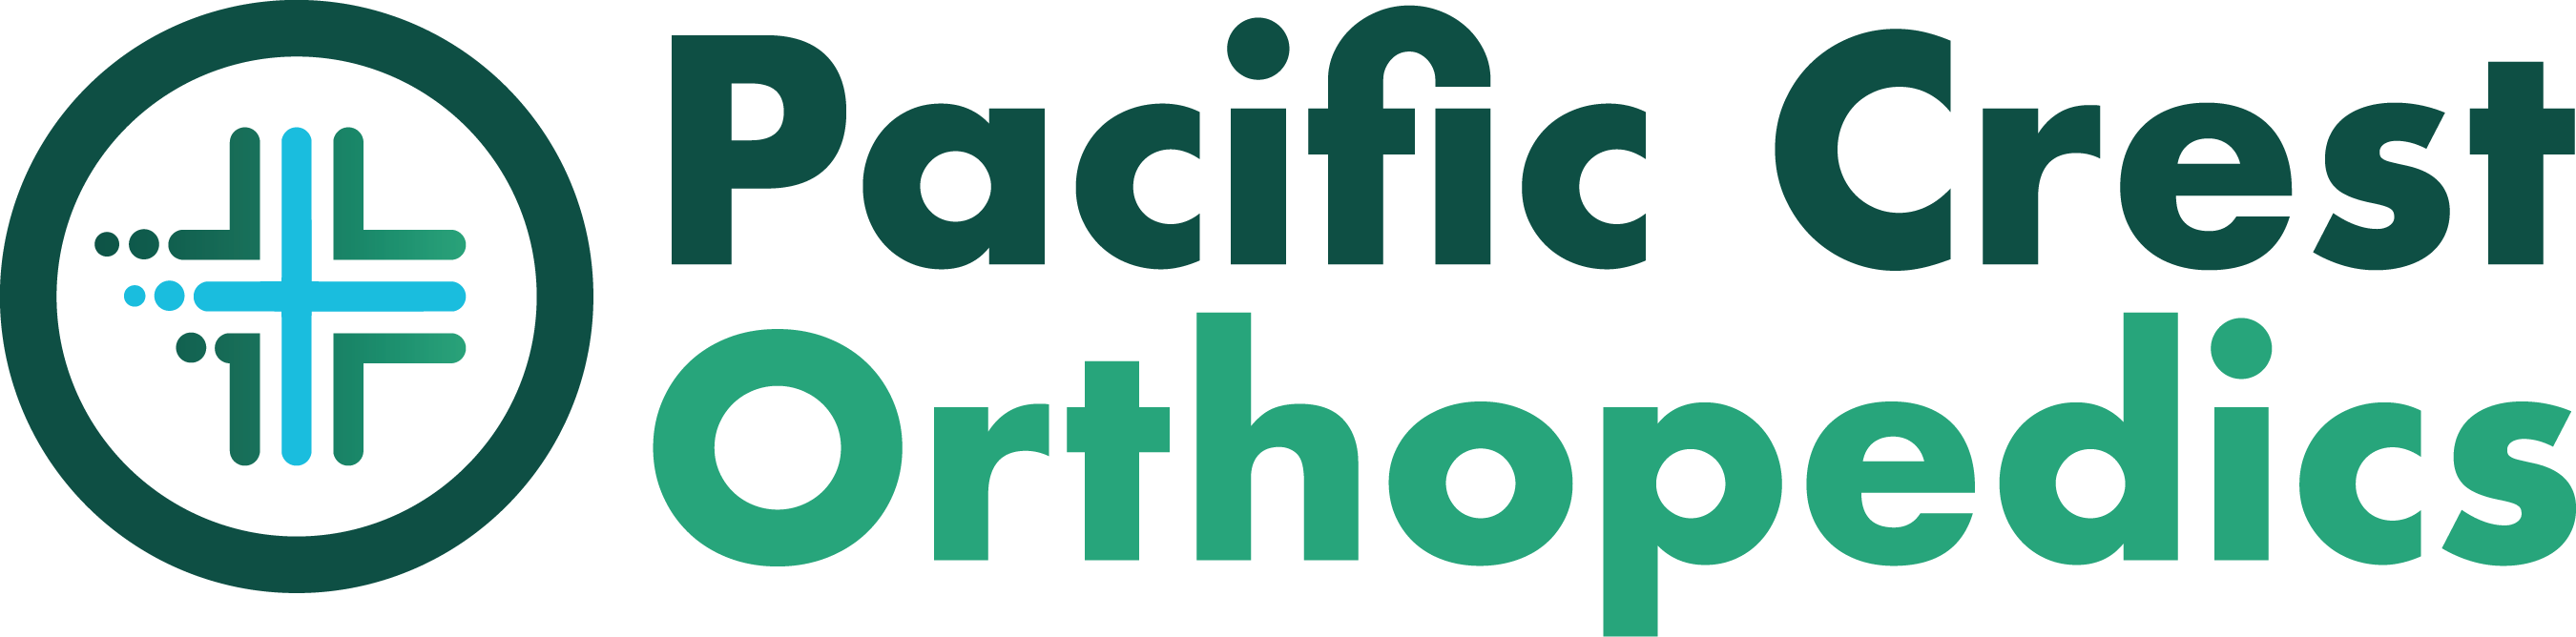 Pacific Crest Orthopedics